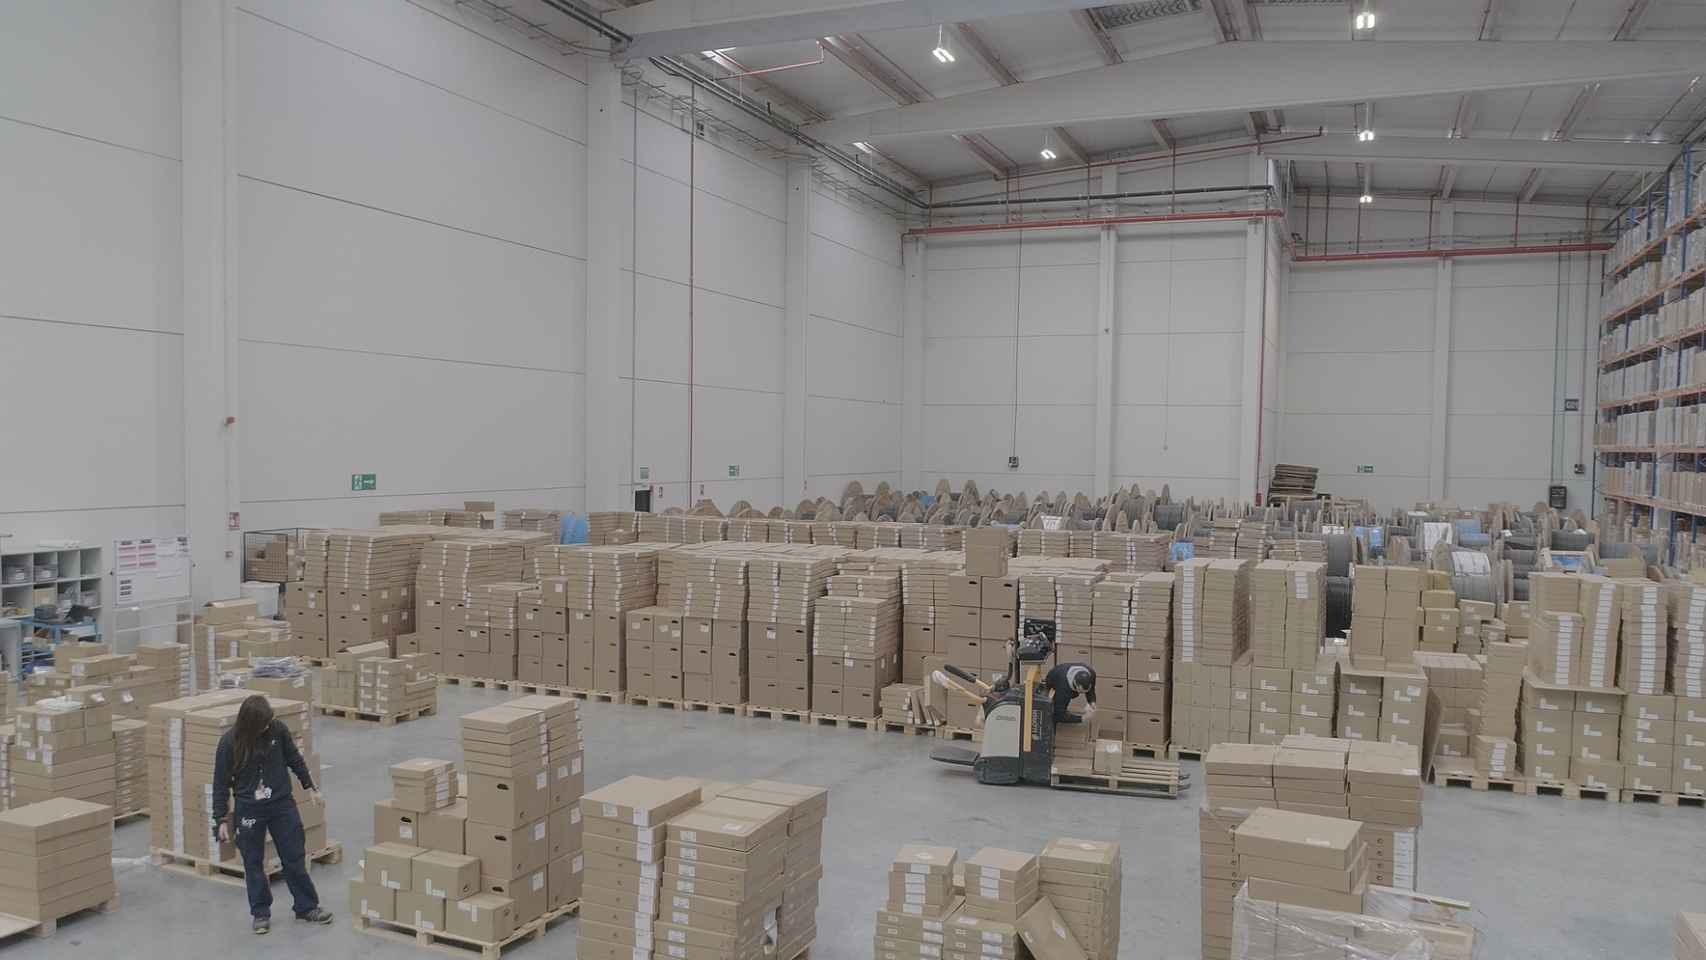 AliExpress amplía su capacidad logística con tres almacenes cerca de Madrid